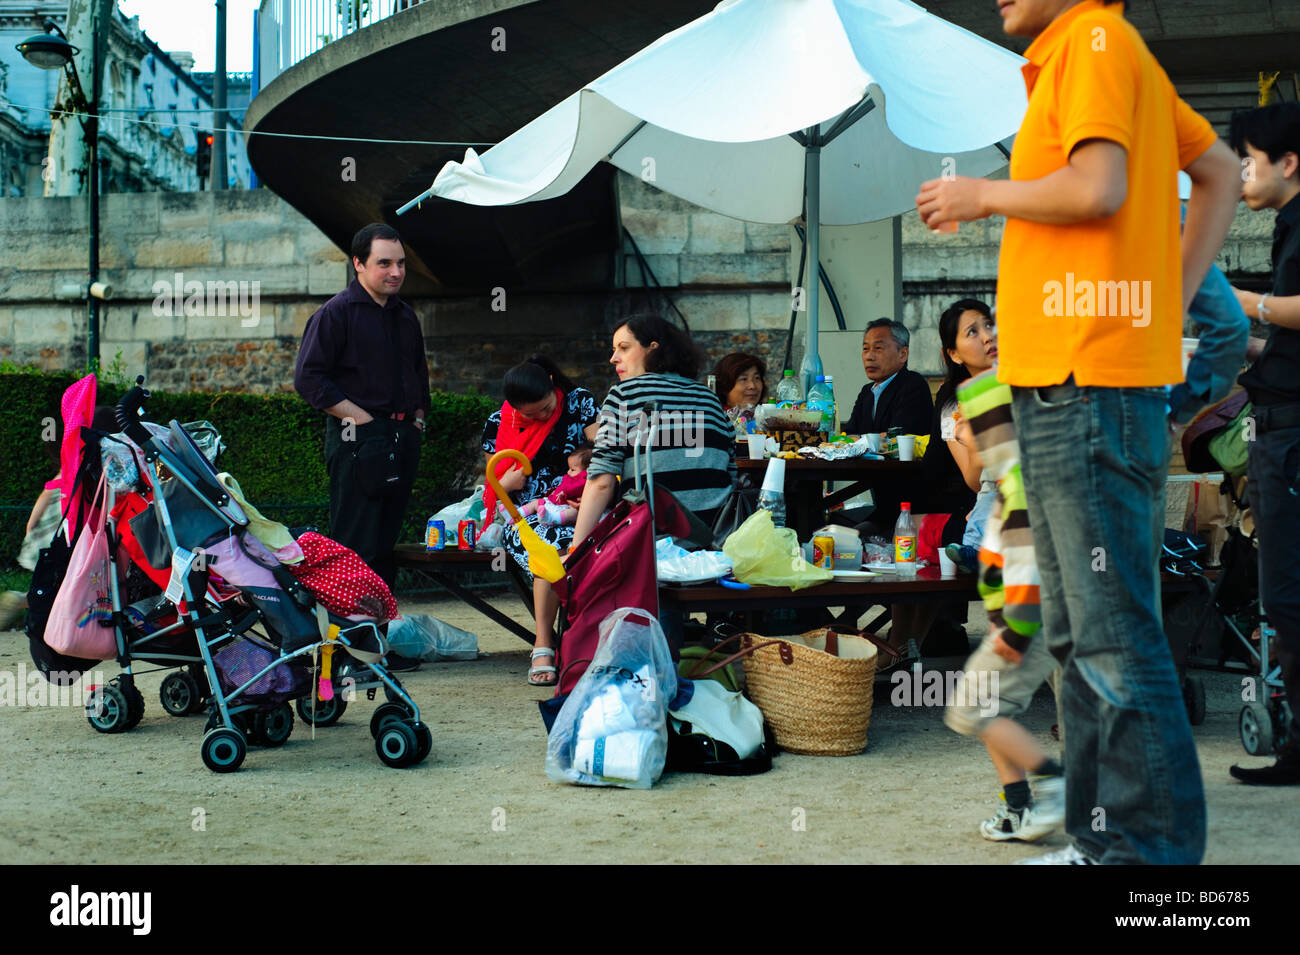 Paris Frankreich, öffentliche Veranstaltungen, kleine Menschenmassen, Touristen, Familien Picknick am 'seine River' Quay im 'Paris Plage' Holiday Kids Stockfoto